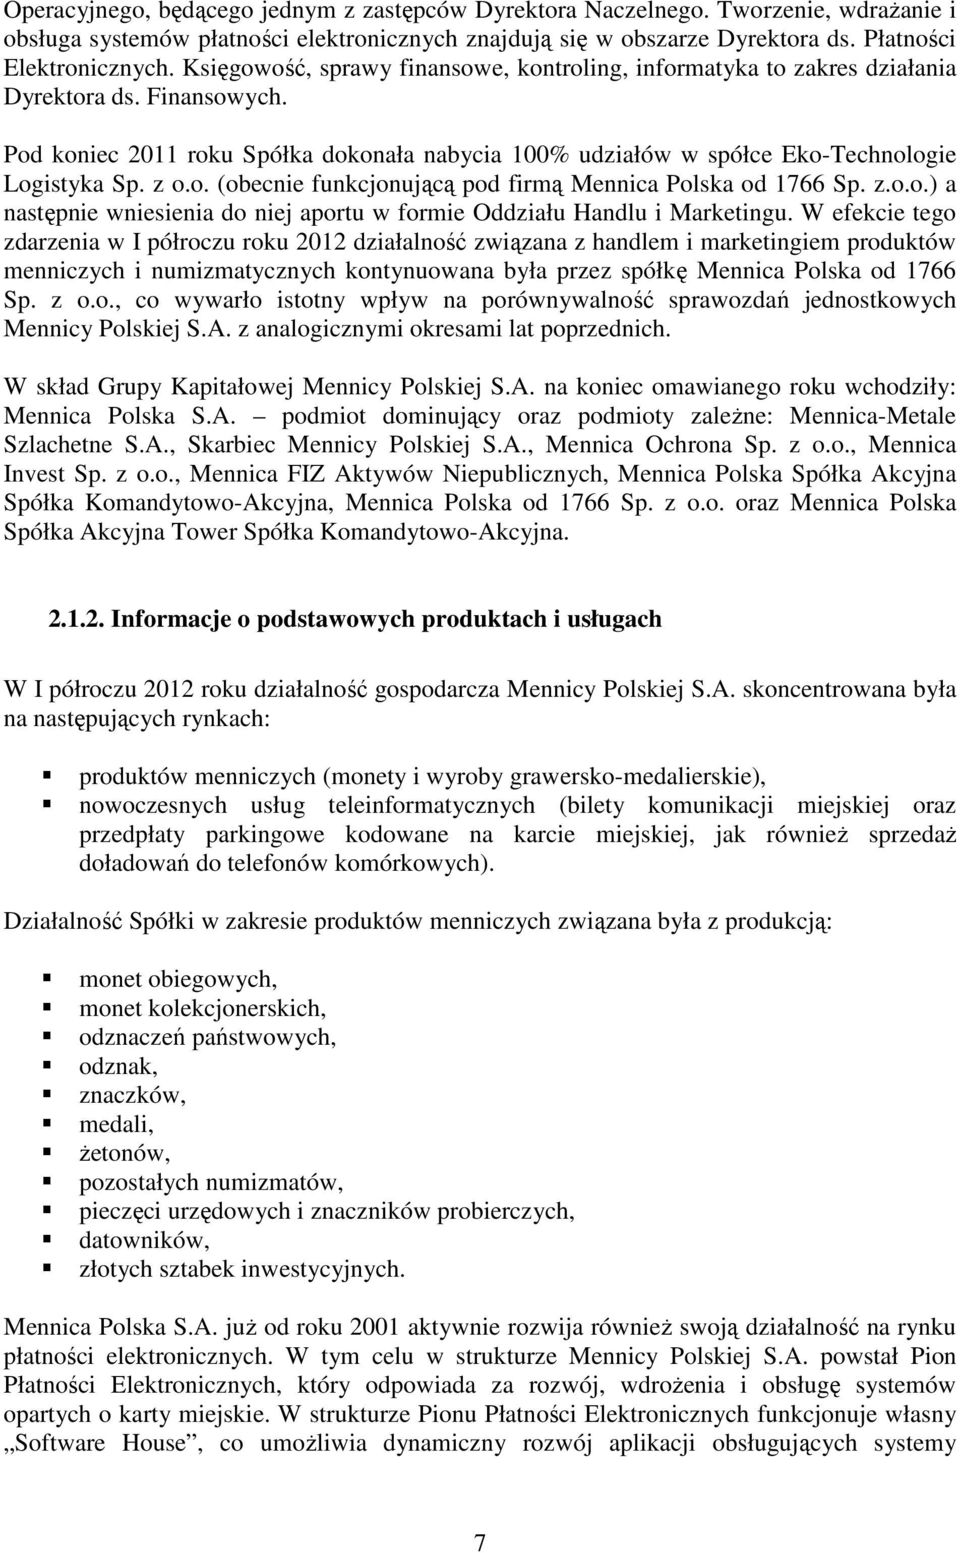 z o.o. (obecnie funkcjonującą pod firmą Mennica Polska od 1766 Sp. z.o.o.) a następnie wniesienia do niej aportu w formie Oddziału Handlu i Marketingu.